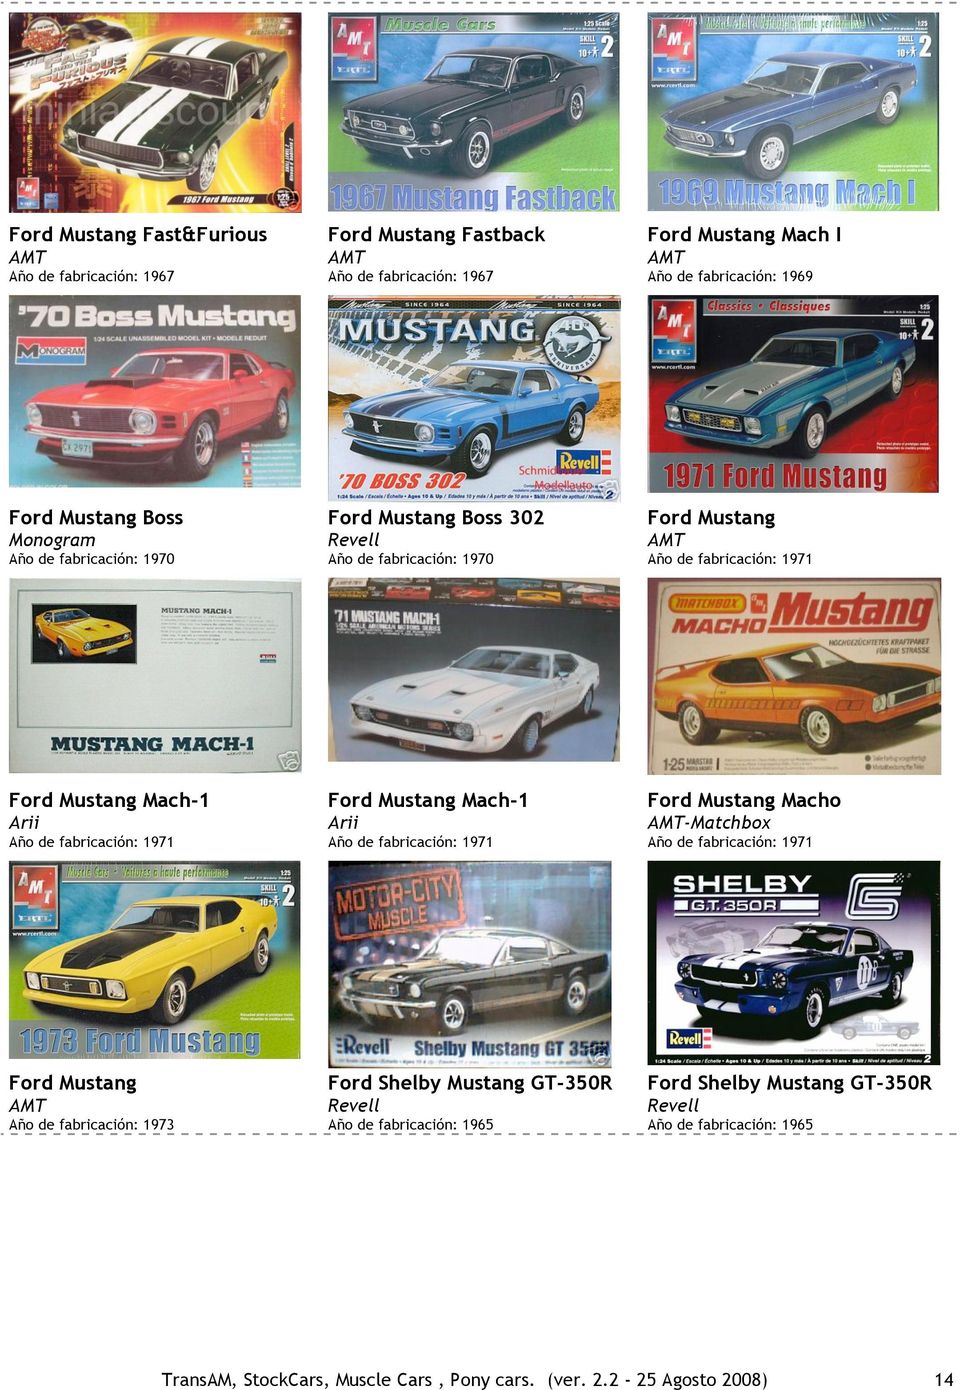 Mustang Año de fabricación: 1973 Ford Shelby Mustang GT-350R Año de fabricación: 1965 Ford Shelby